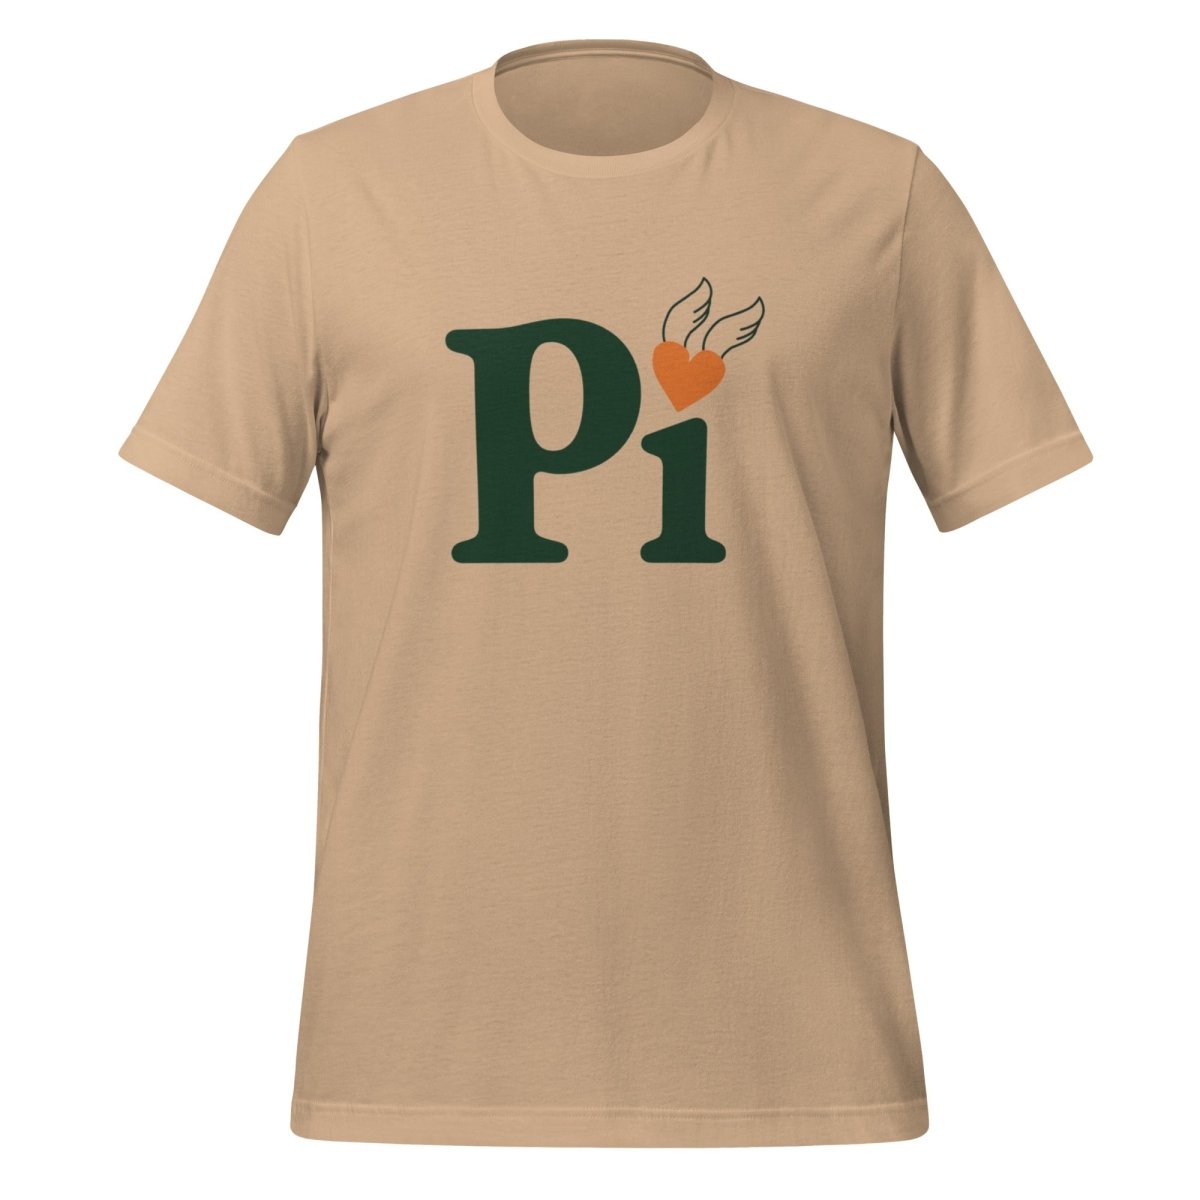 Pi Heart T - Shirt (unisex) - Tan - AI Store